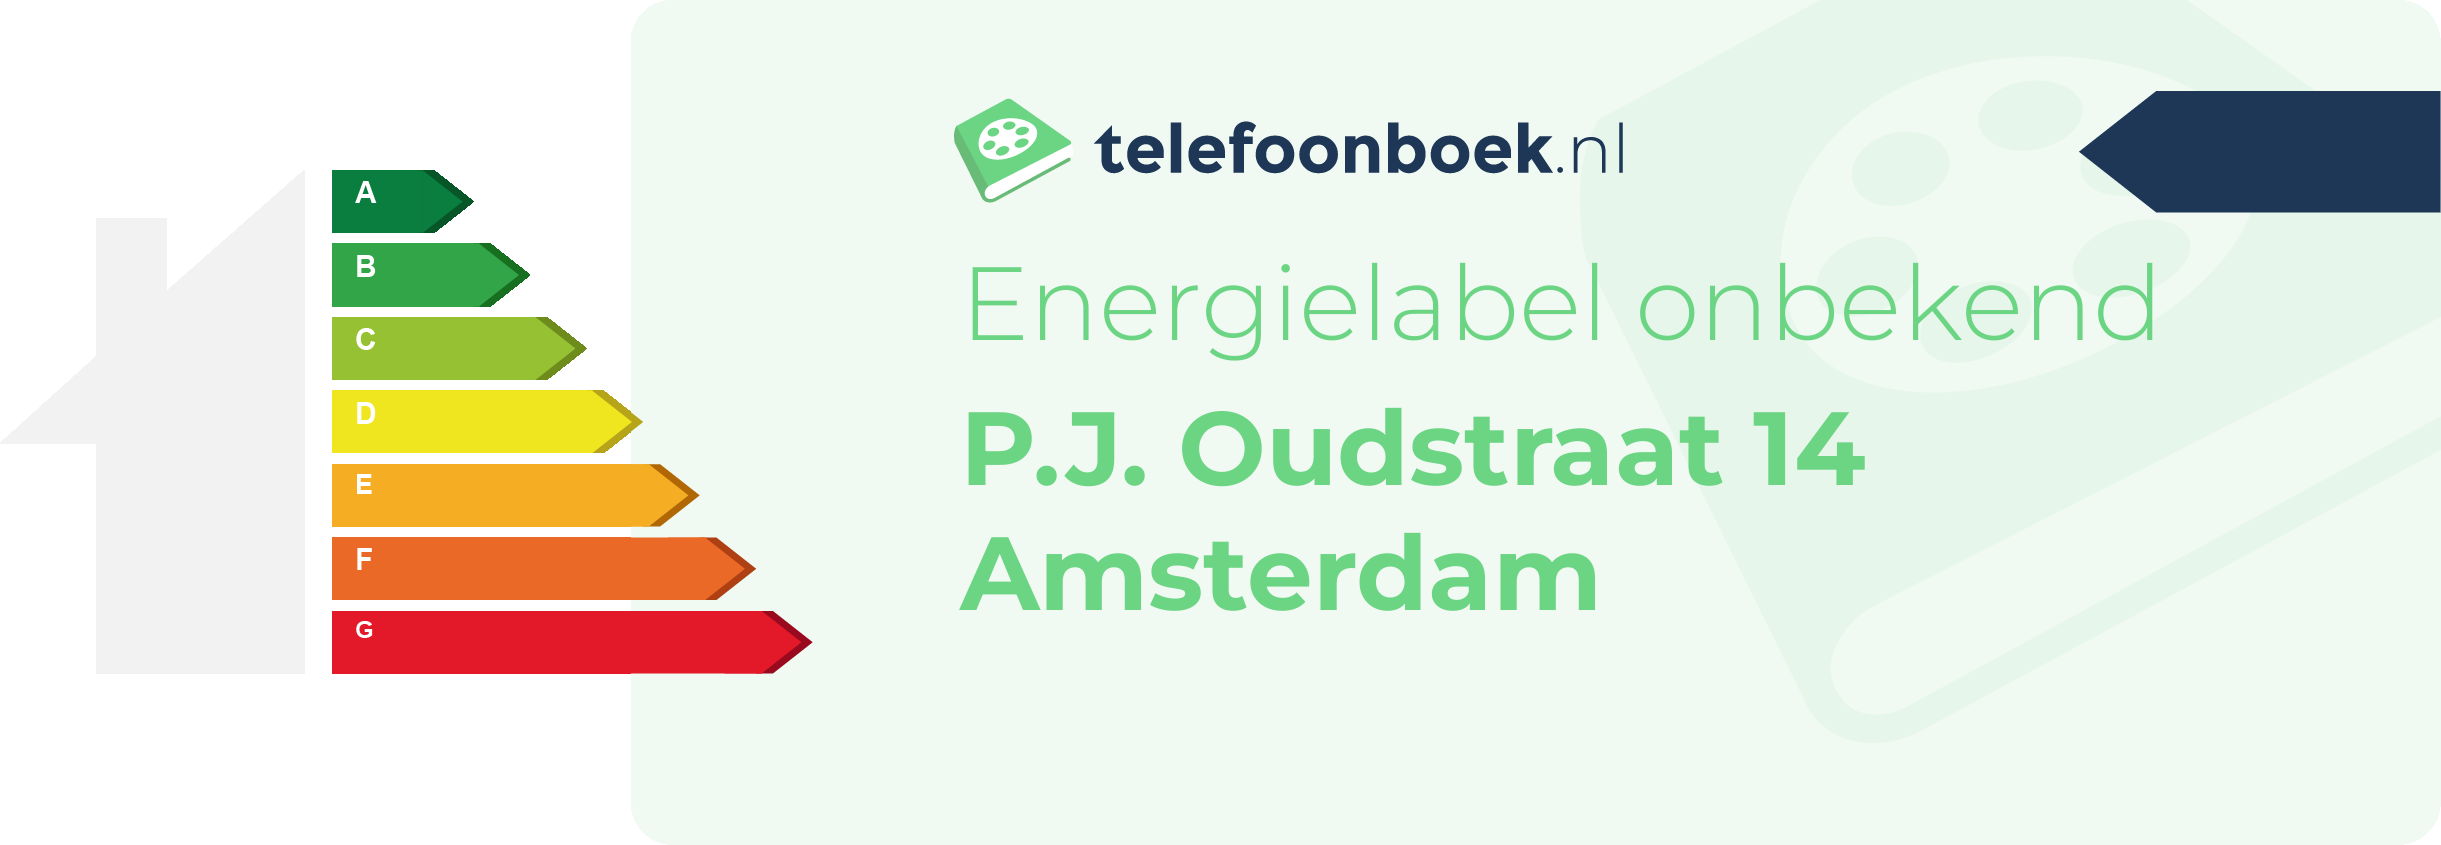 Energielabel P.J. Oudstraat 14 Amsterdam